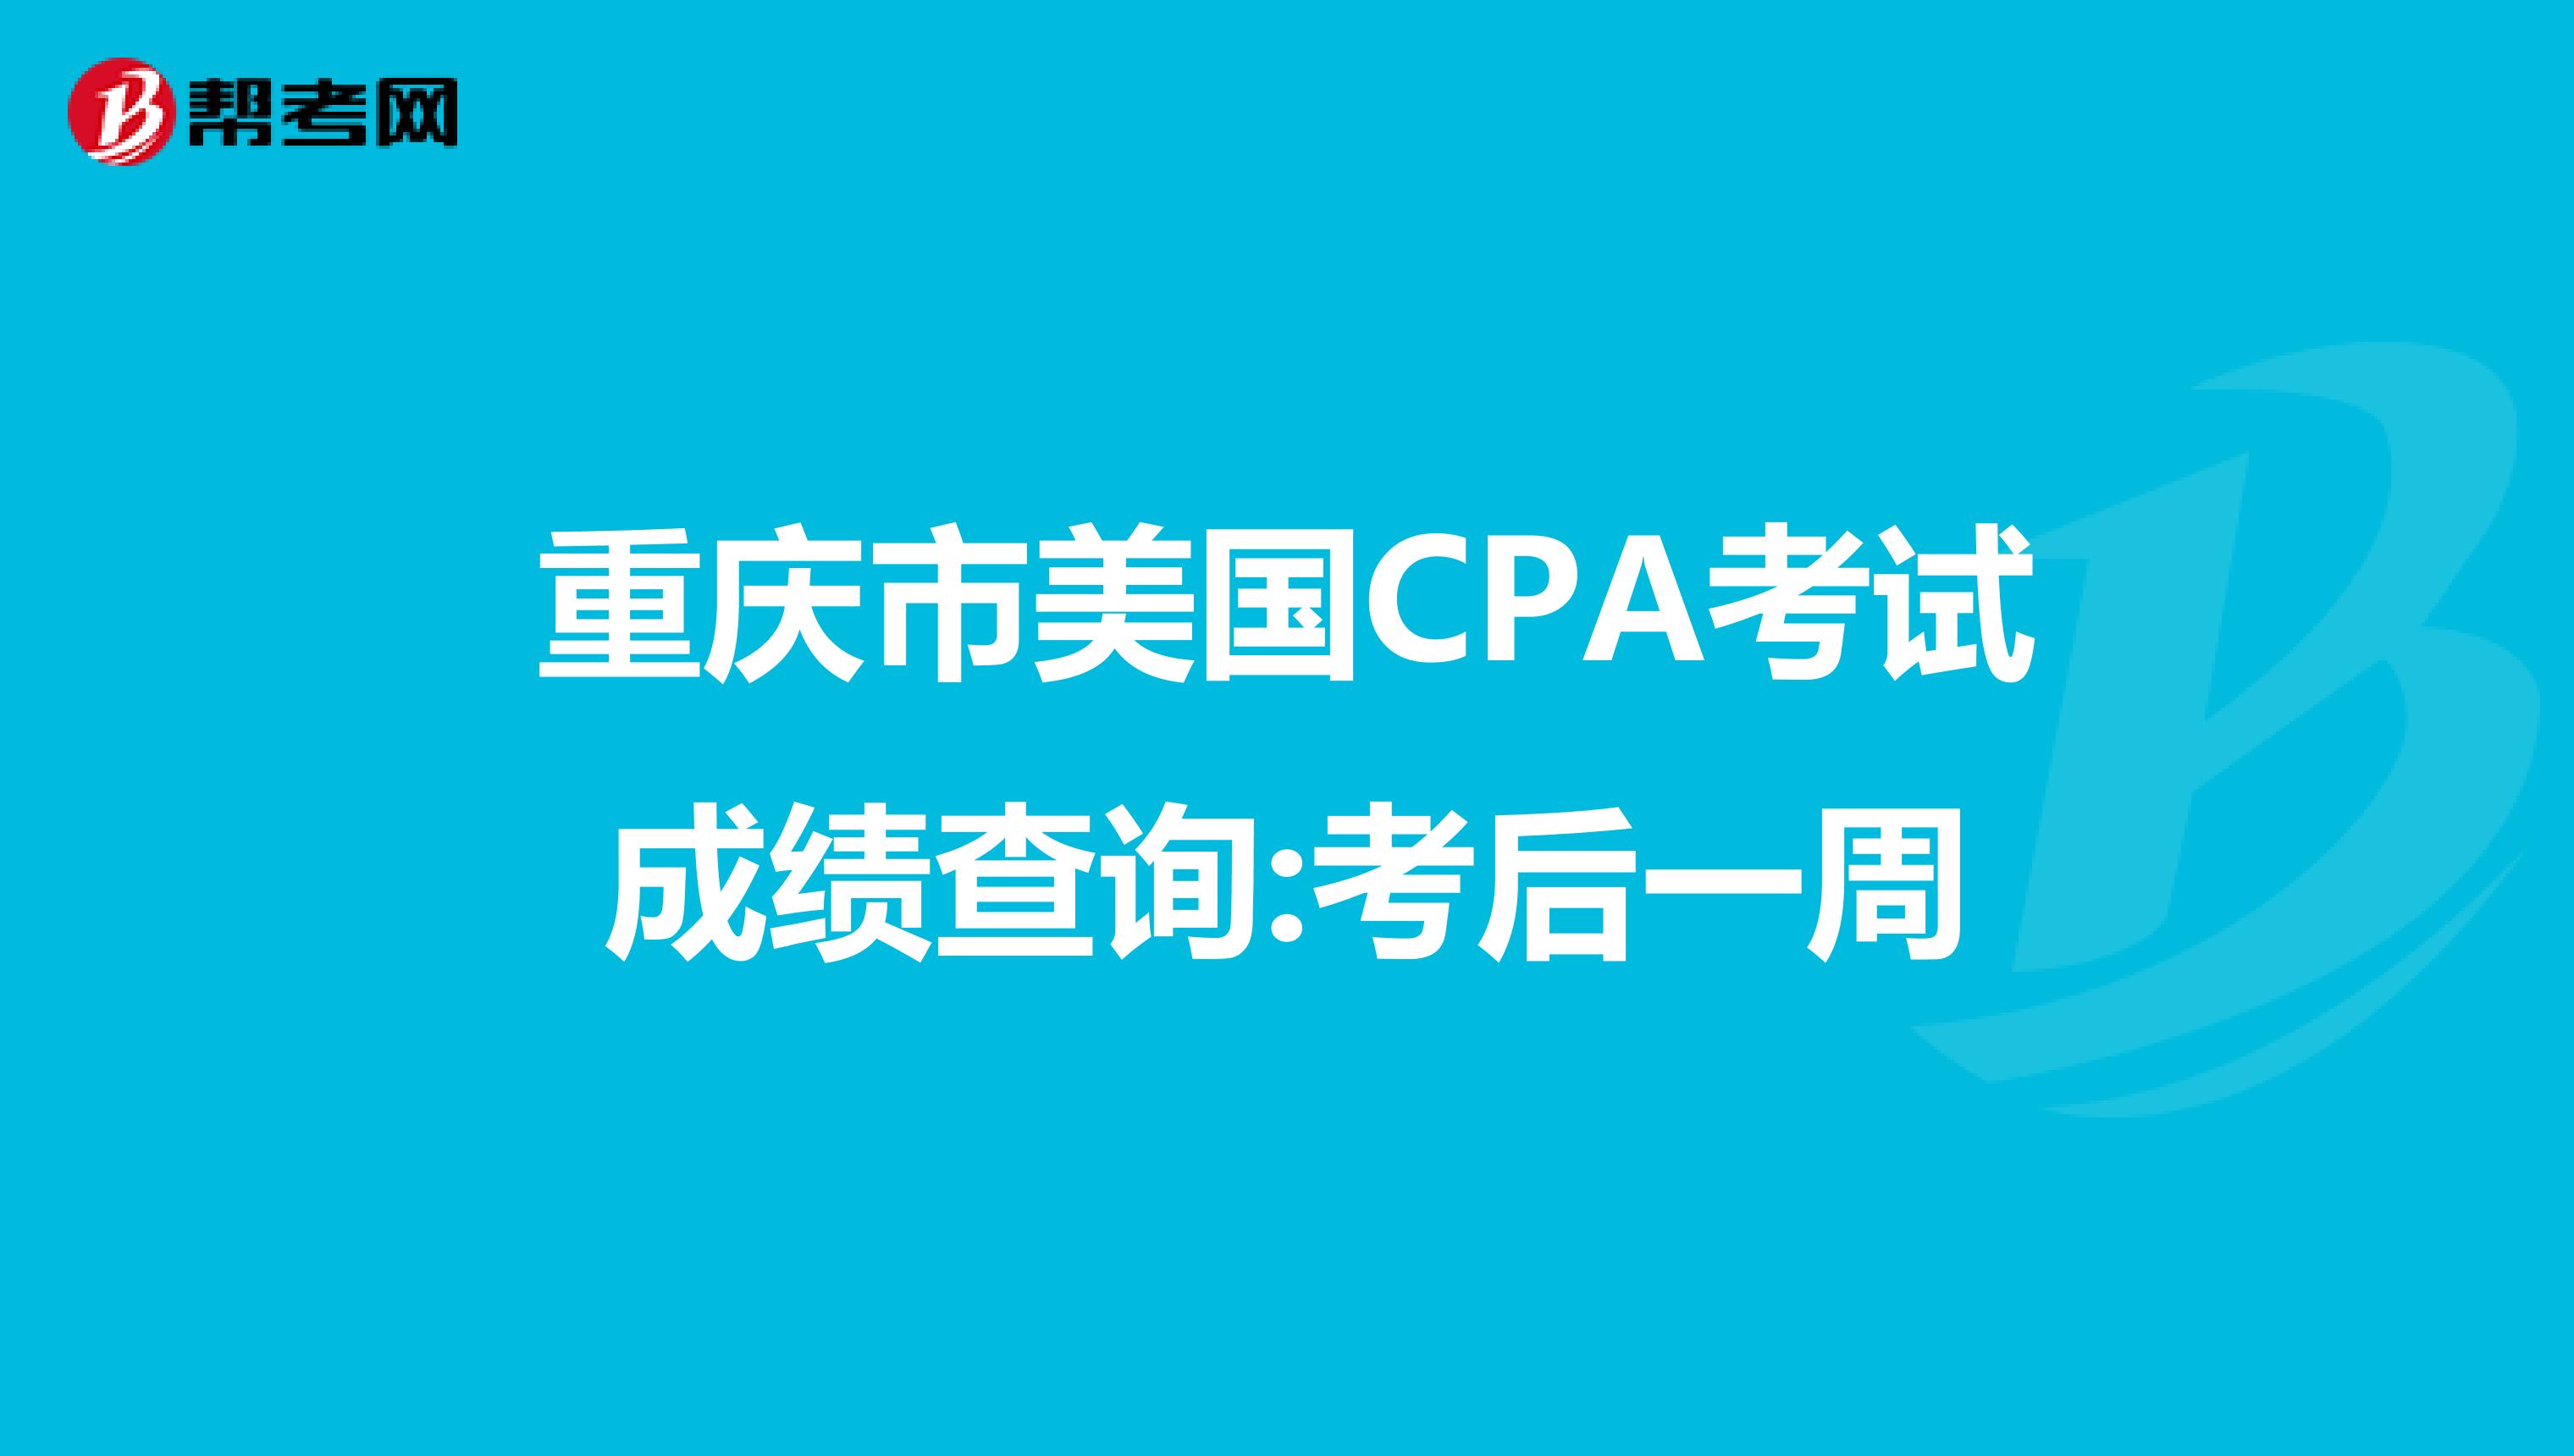 重庆市美国CPA考试成绩查询:考后一周